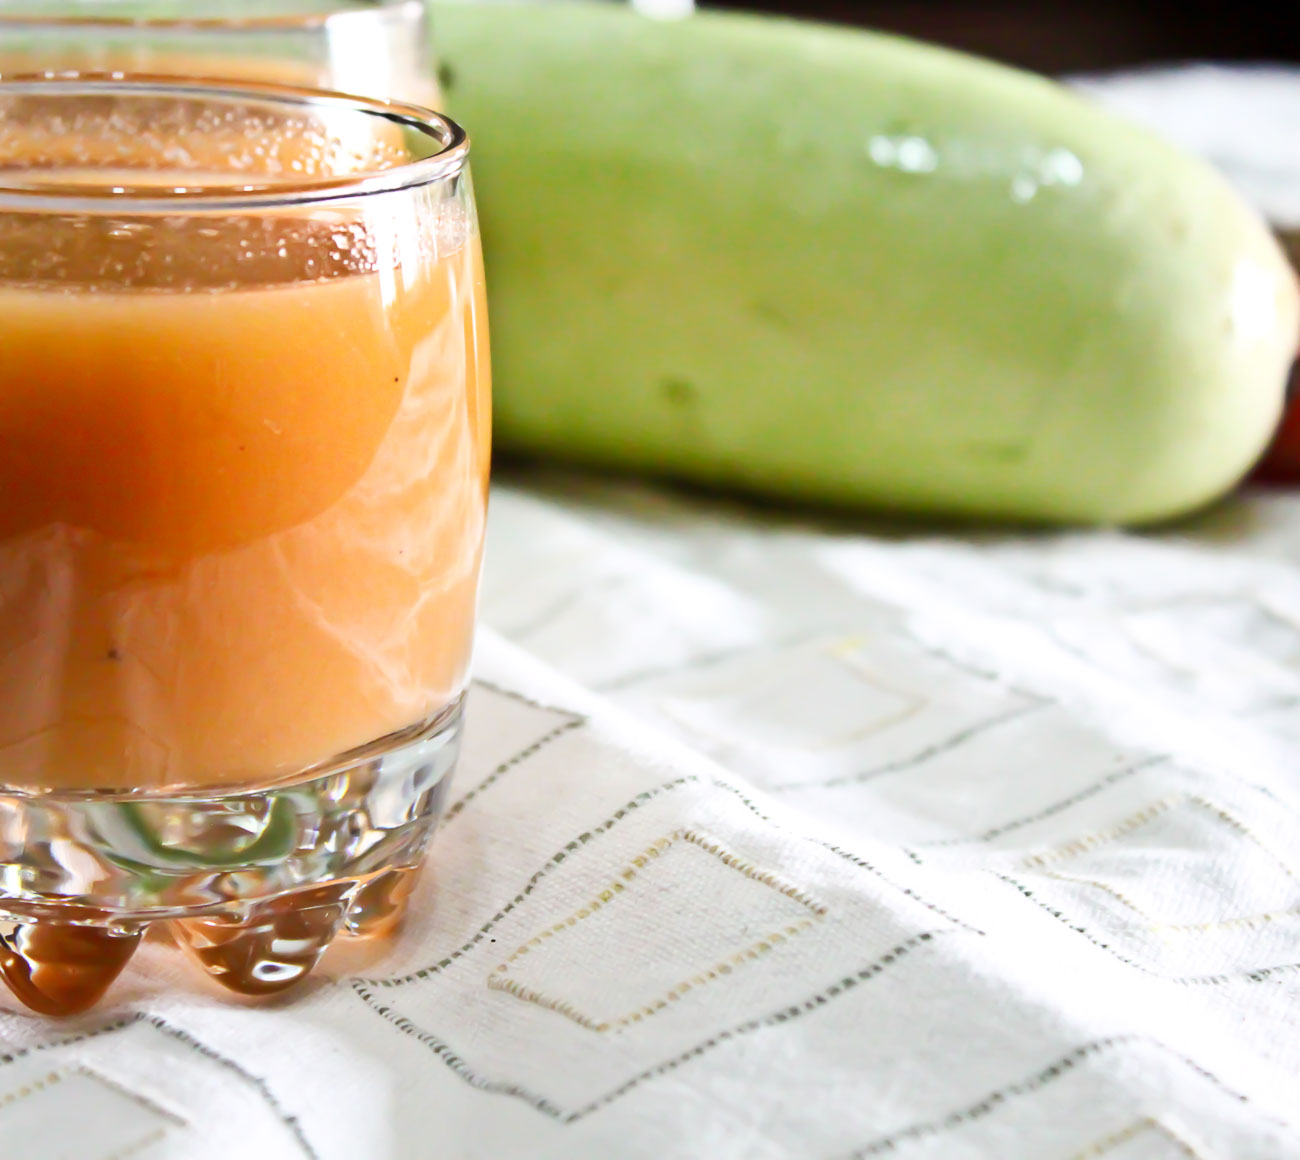 गाजर लौकी का रस रेसिपी - Gajar Lauki Juice Recipe